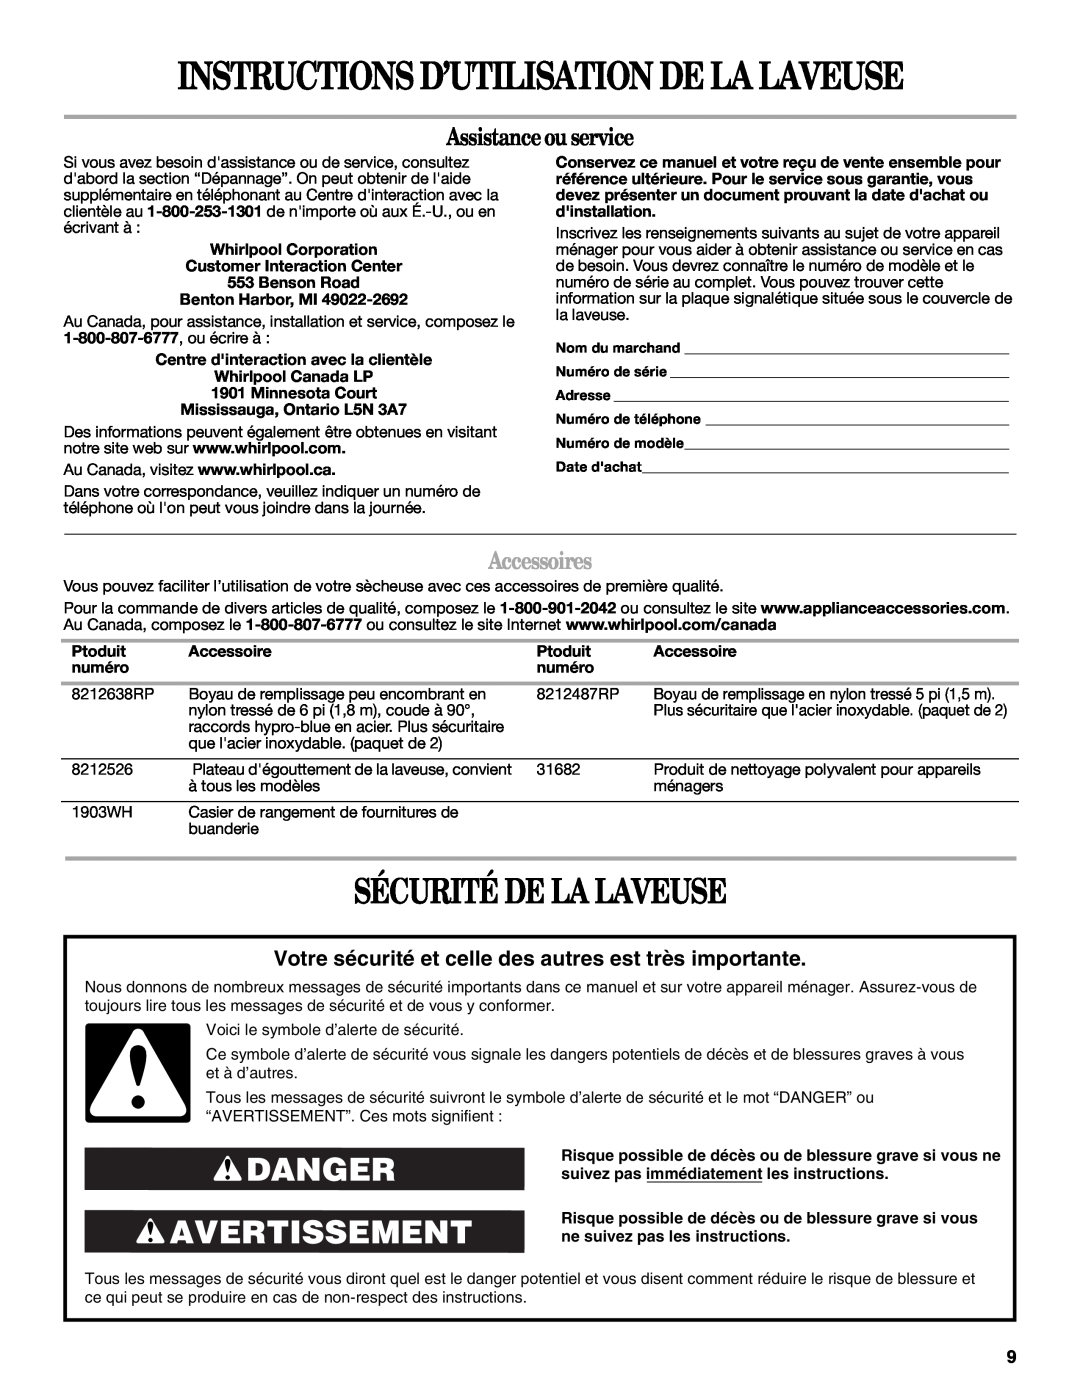 Whirlpool W10150595A Instructions D’Utilisation De La Laveuse, Sécurité De La Laveuse, Danger Avertissement, Accessoires 